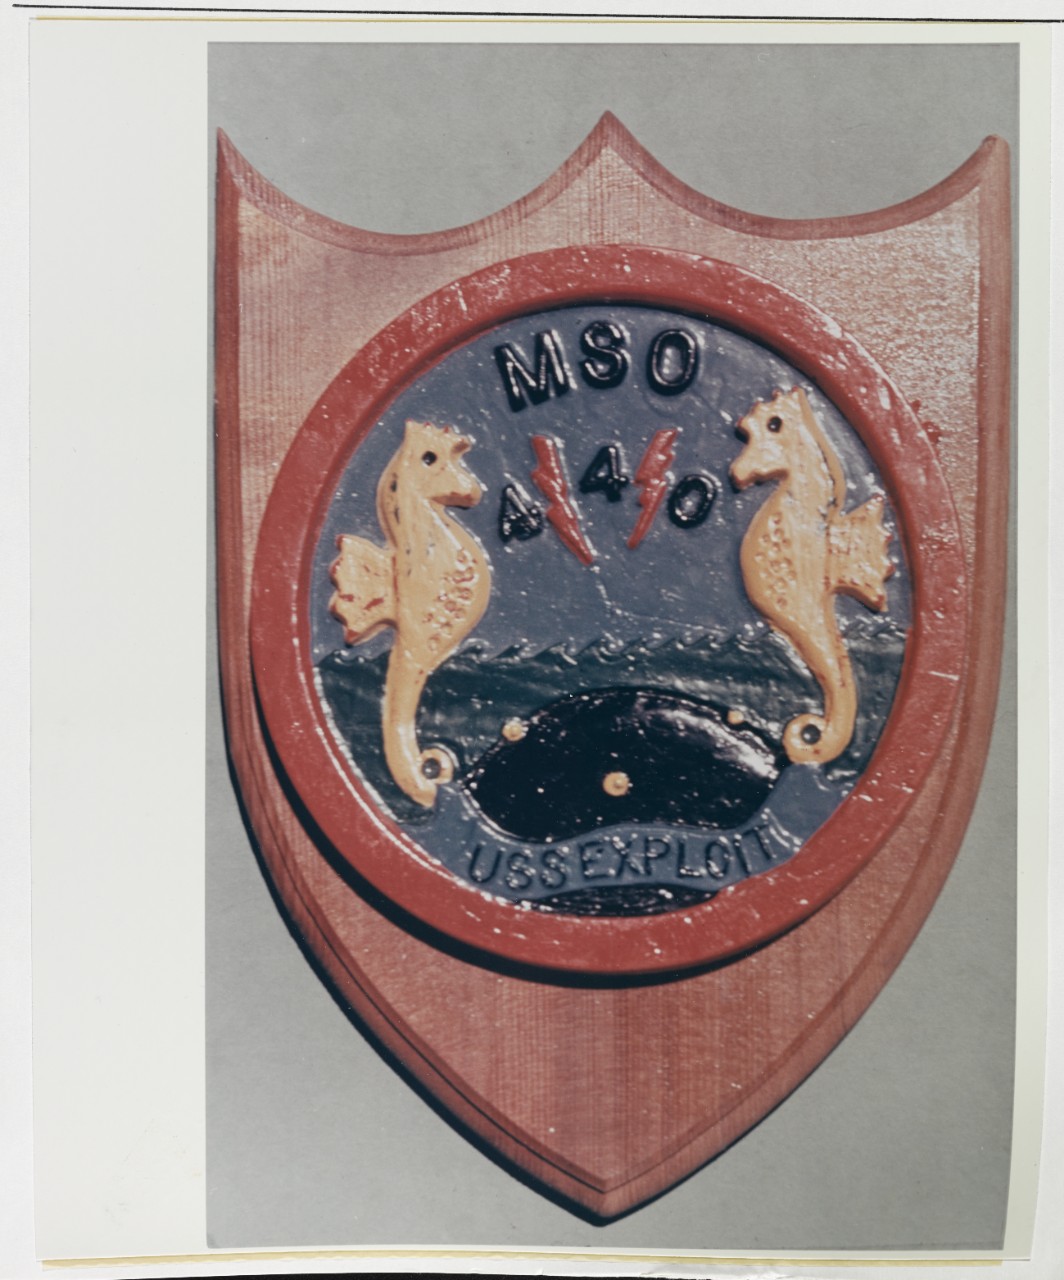 Insignia: USS EXPLOIT (MSO-440)